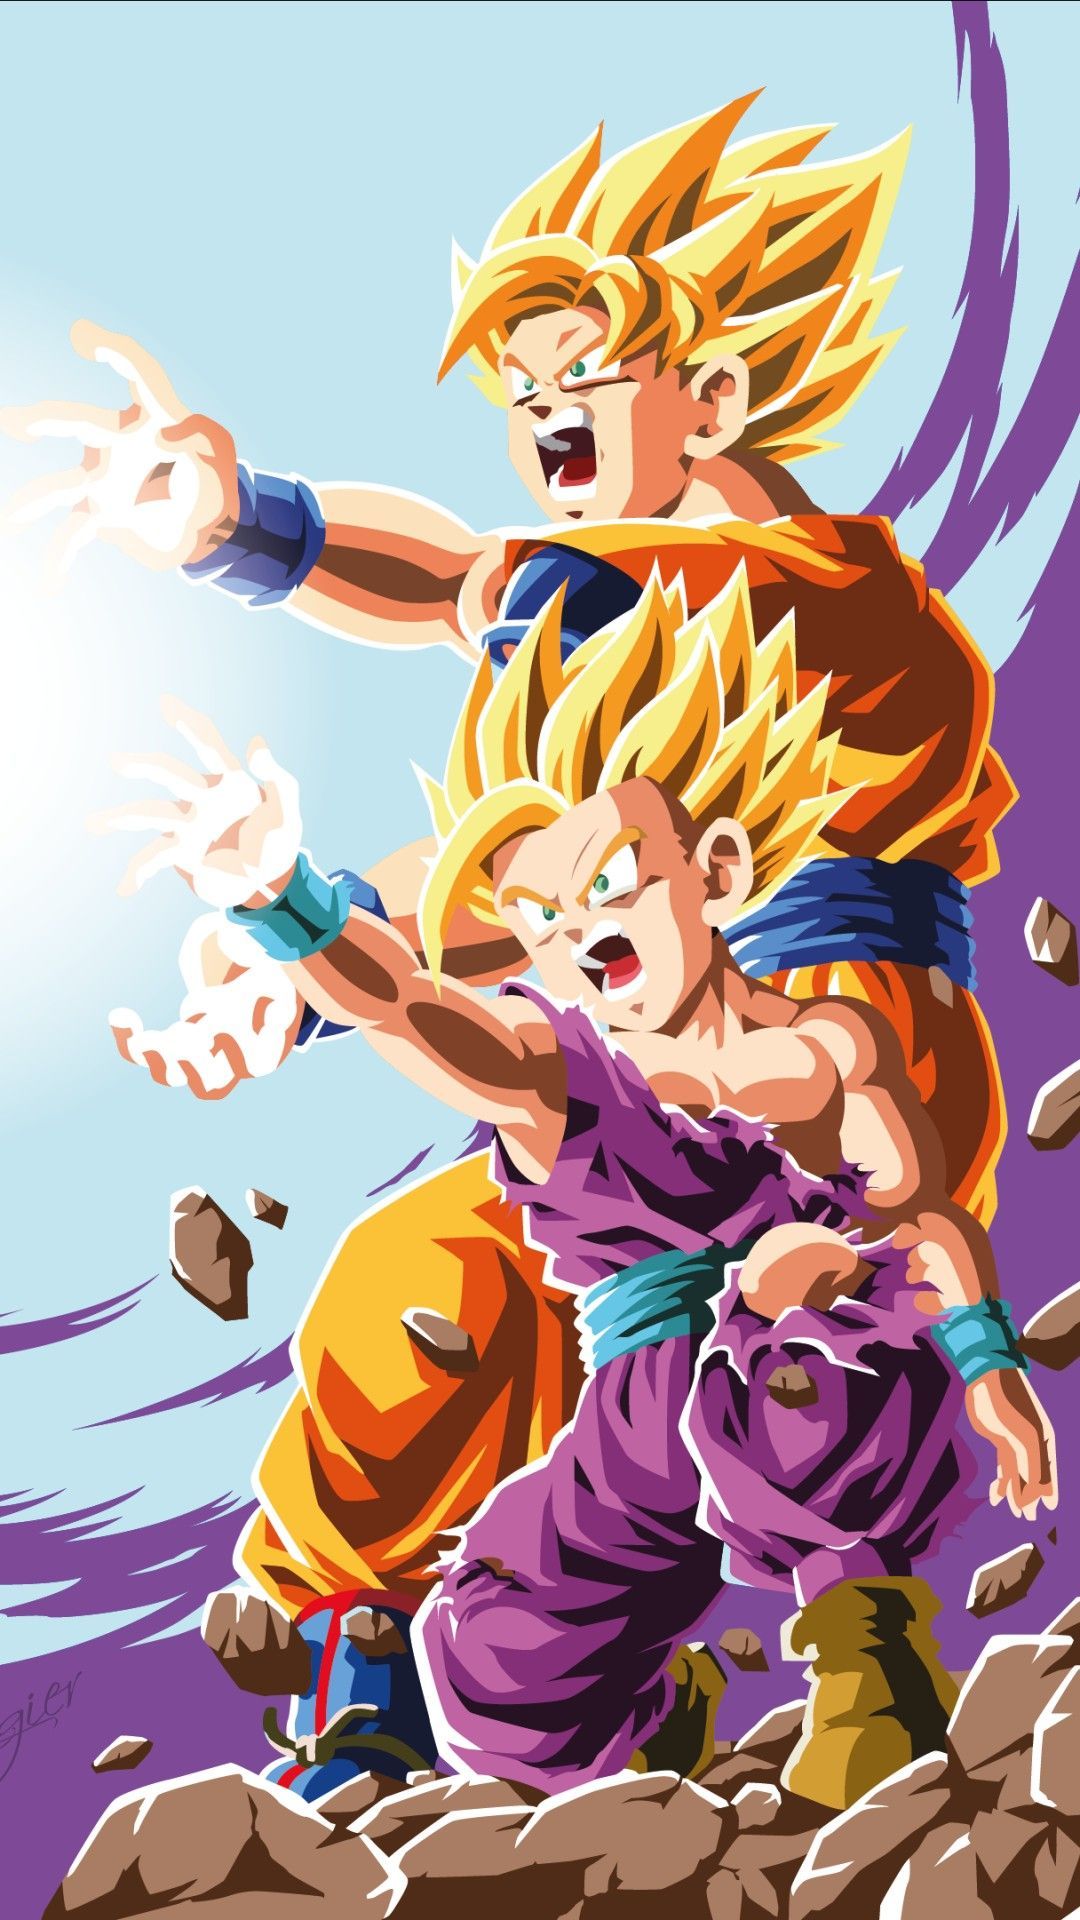 Goku and Gohan Wallpaper Widescreen by BrusselTheSaiyan on DeviantArt